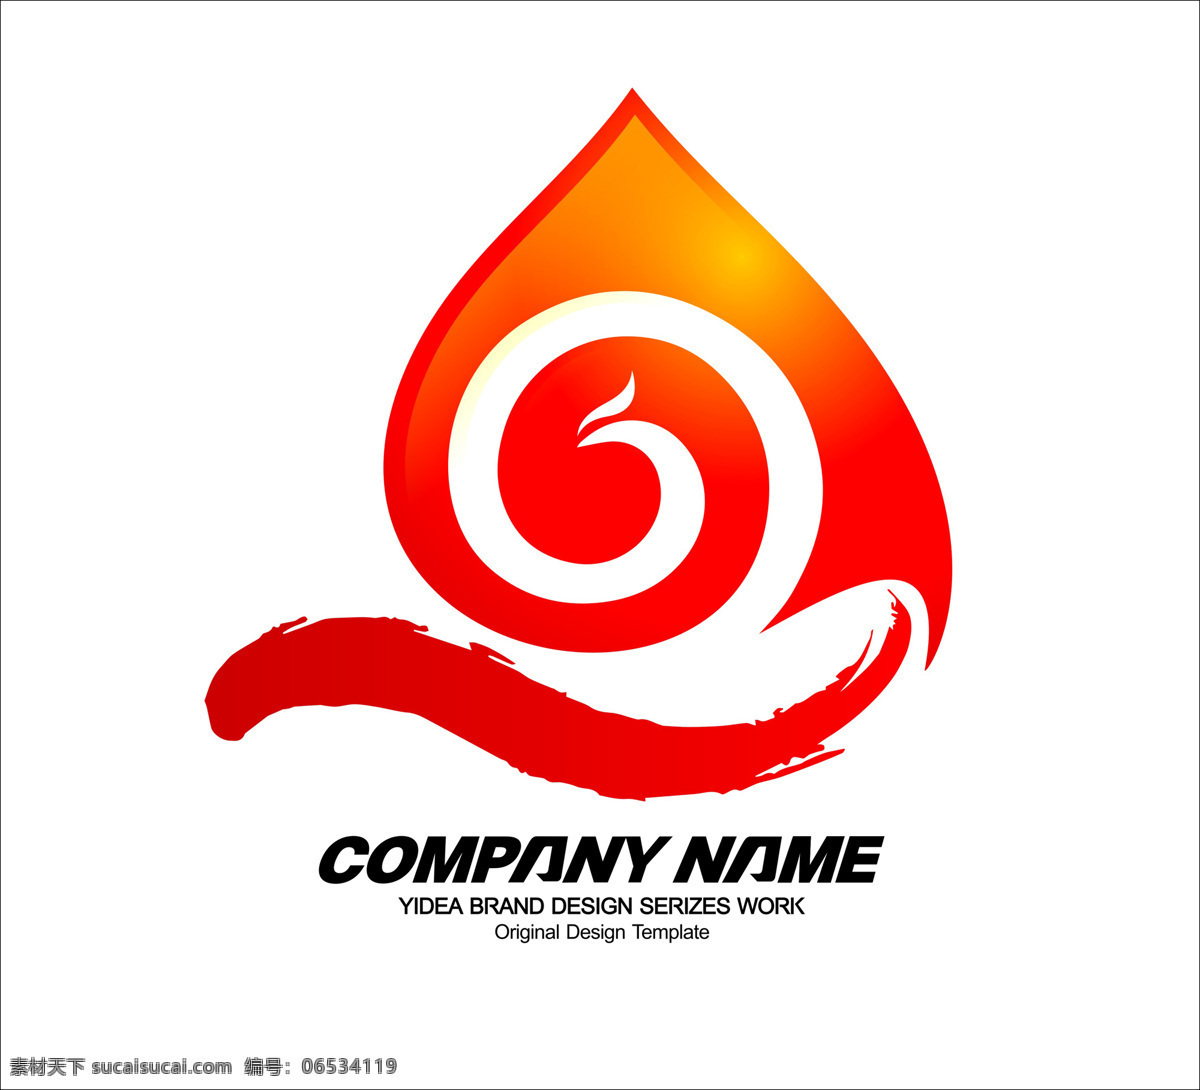 大气 红色 帆船 标志 公司 logo 公司标志设计 企业 企业标志设计 简约 创意 a 字母 标志设计 q 凤凰 图形